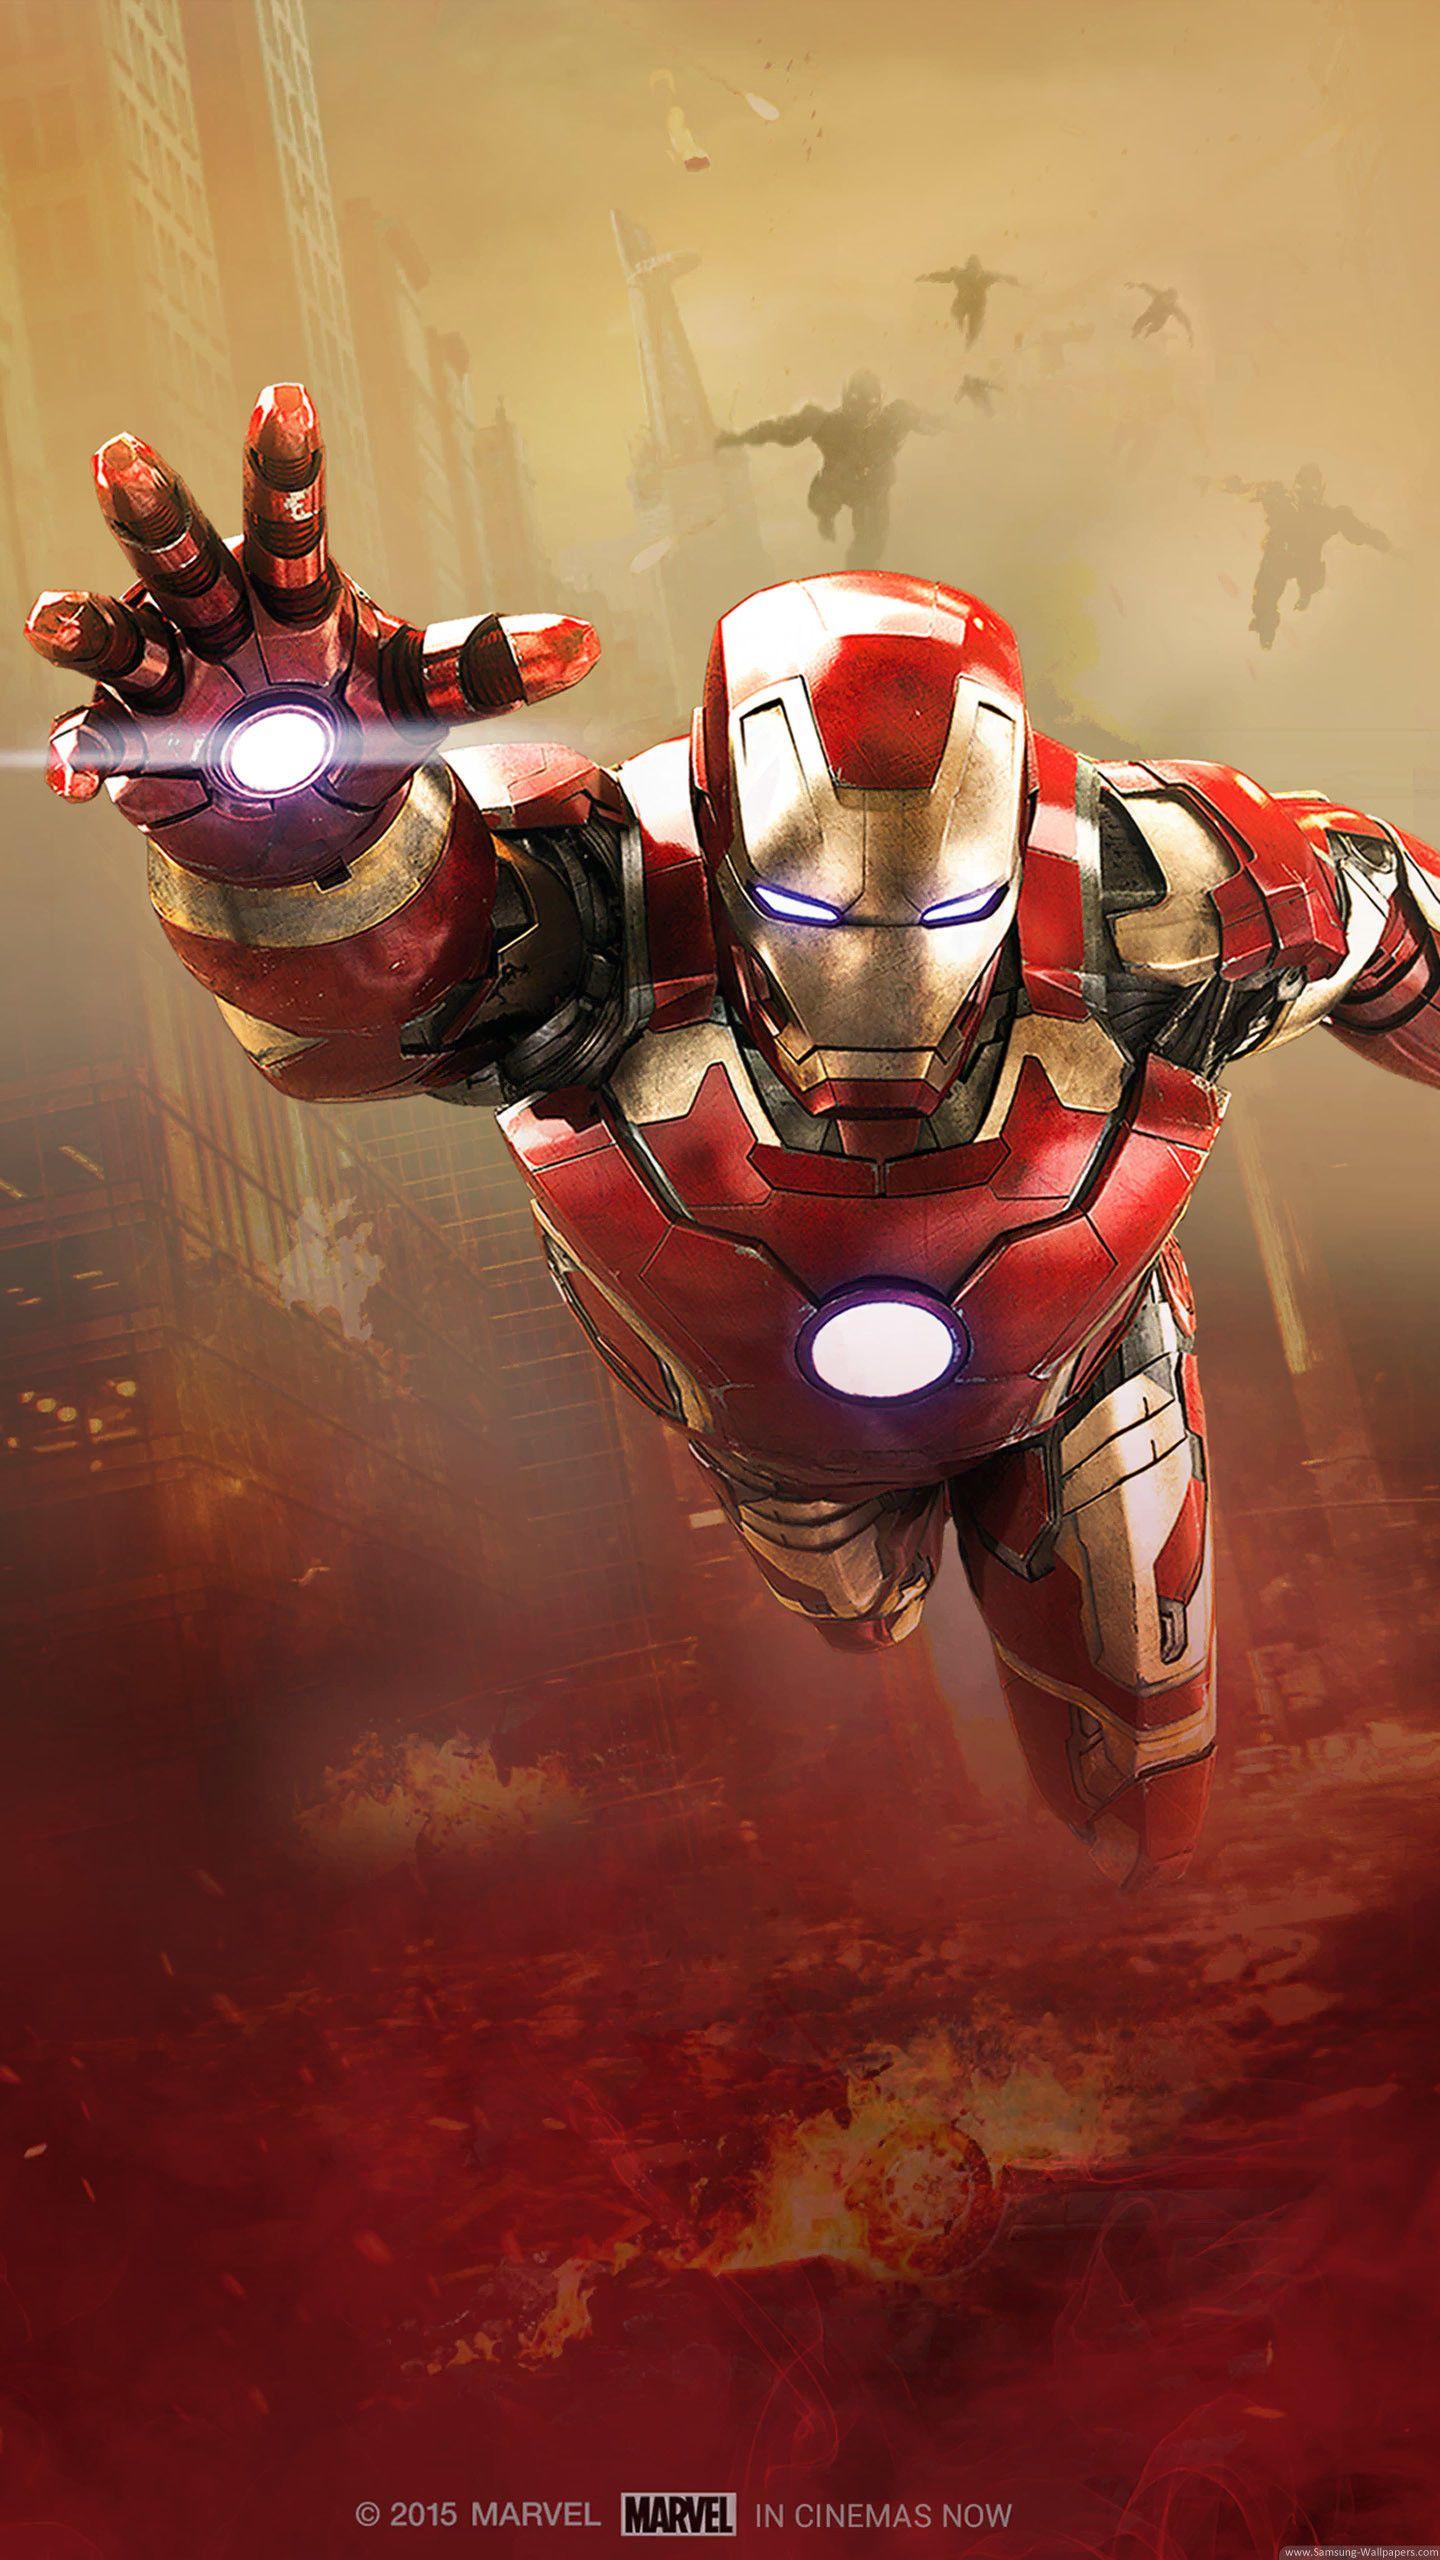 Download mobile wallpaper: Cinema, Iron Man, free. 13303